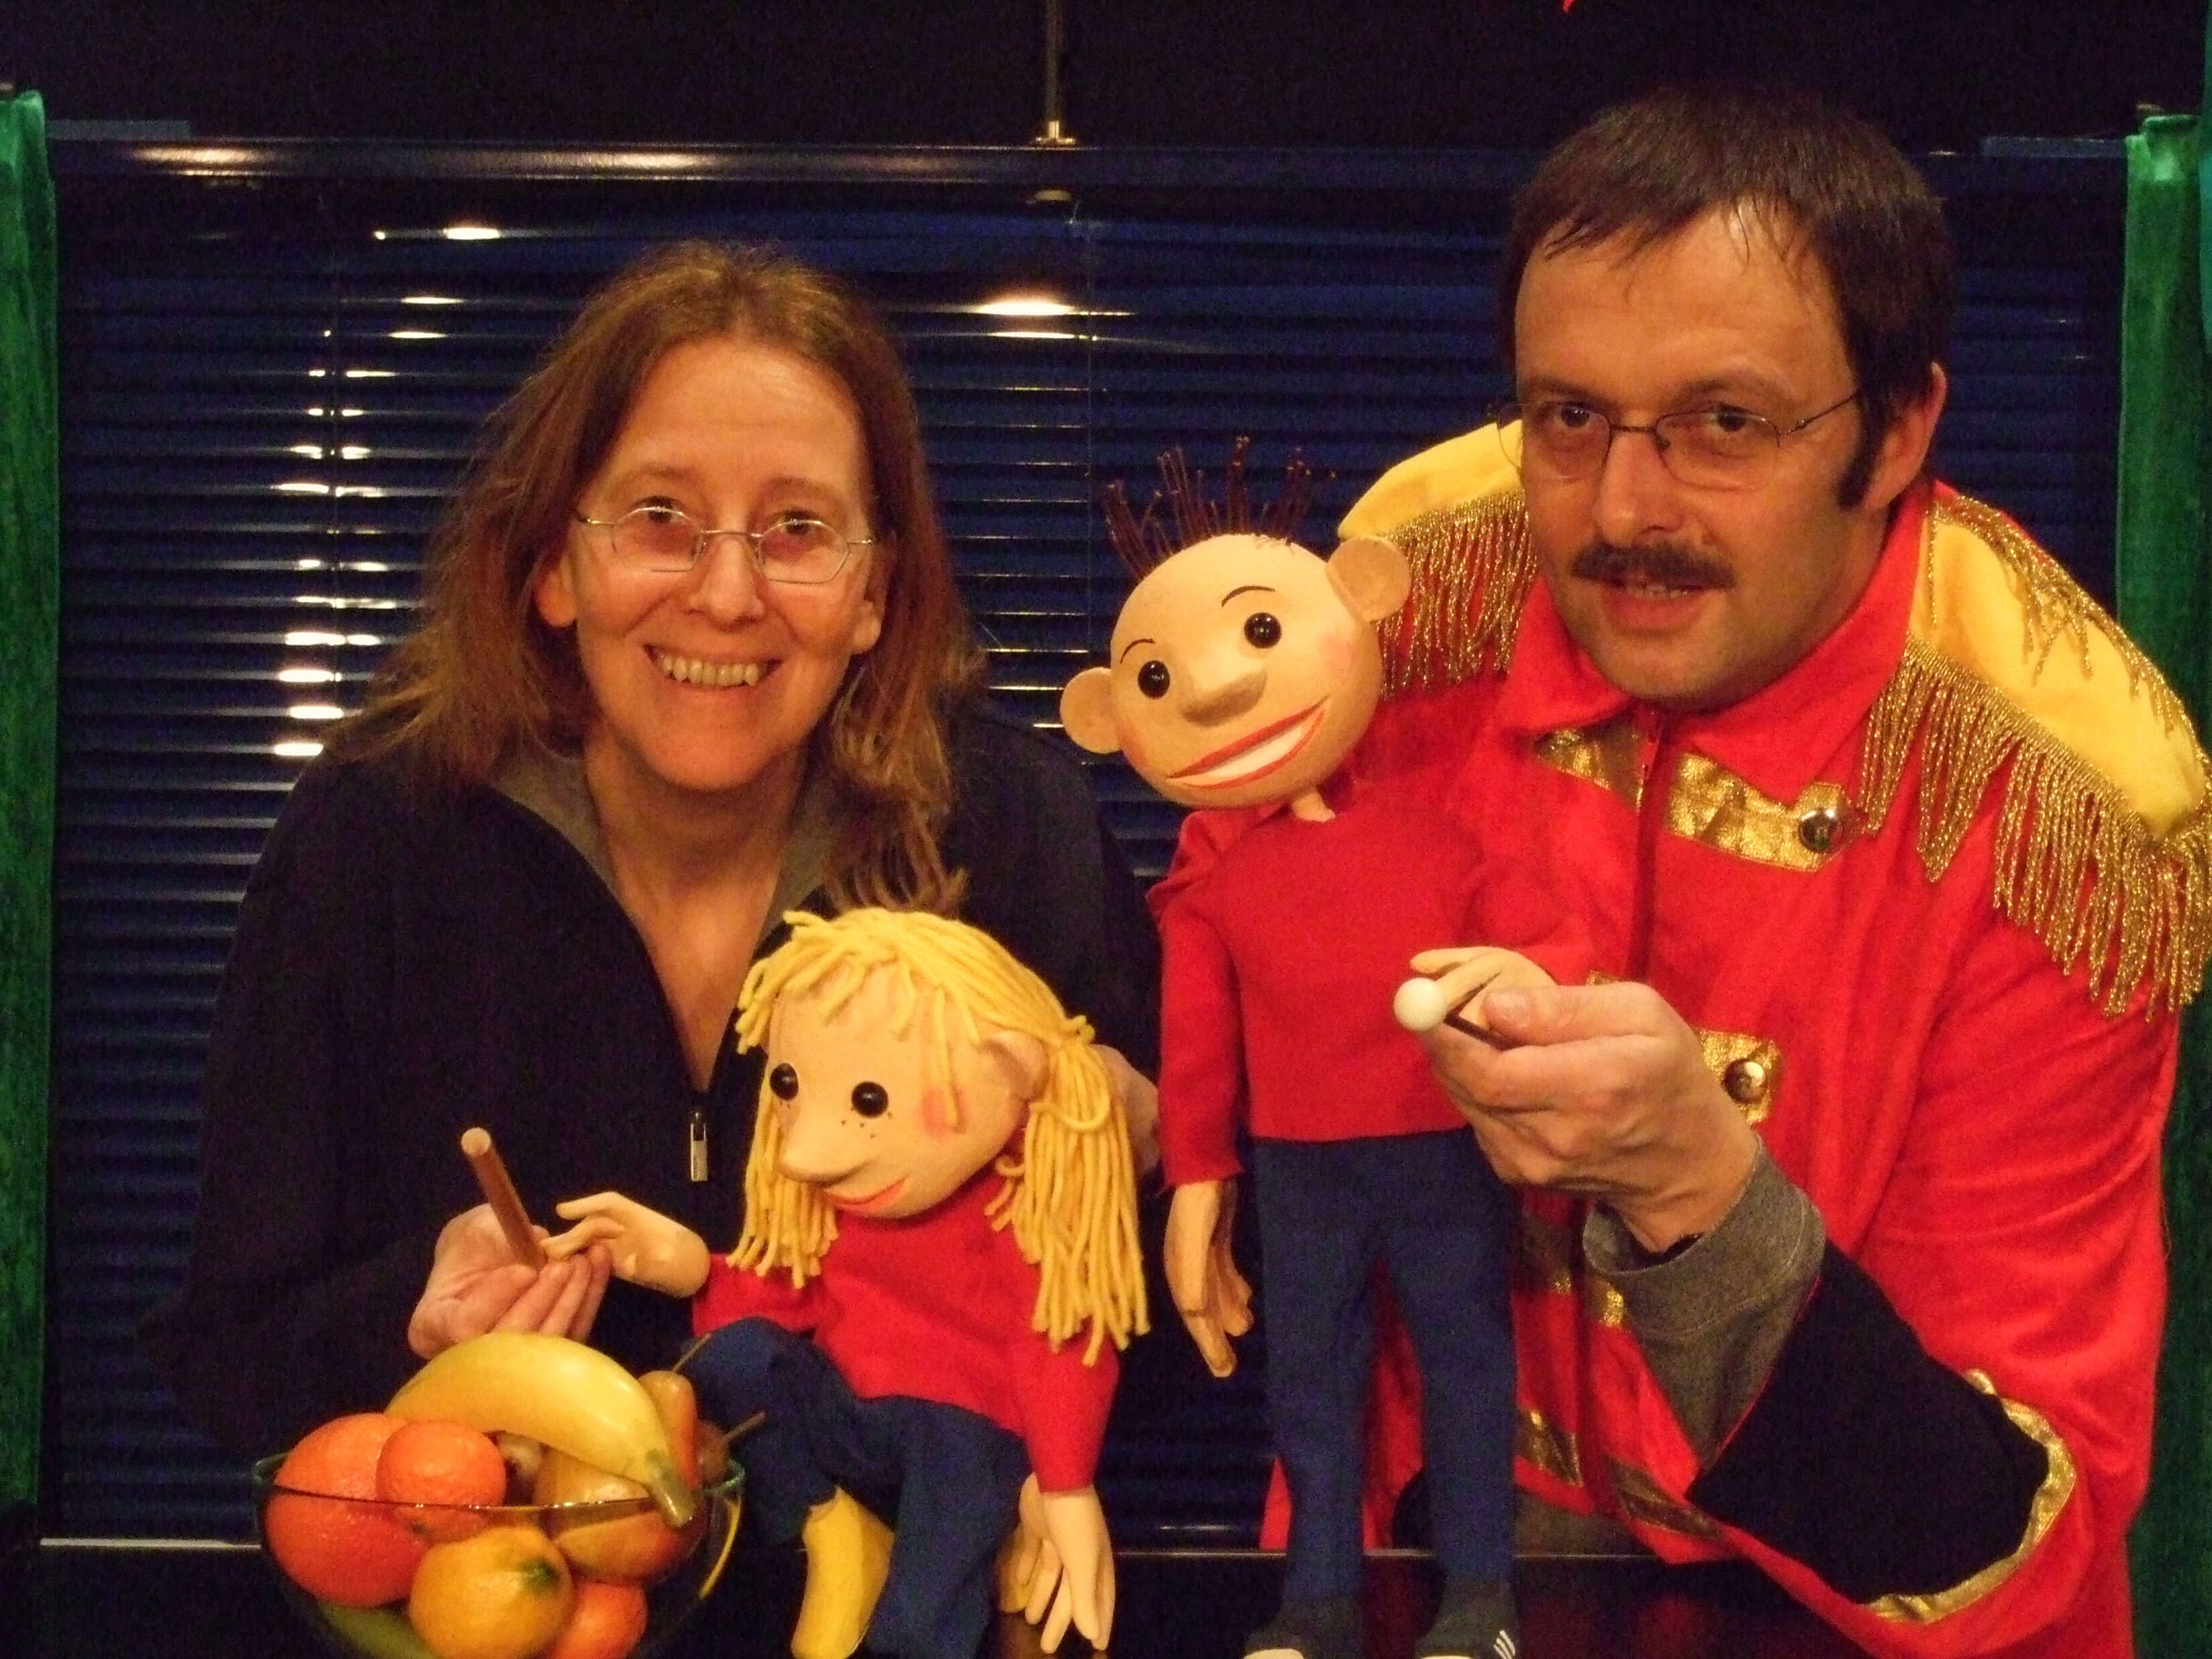 Foto: Doro Wellfonder mit der Tischfigur Flummi und Wolfgang in Zirkusdirektorjacke mit der Figur von Flo. Links daneben steht eine Schüssel mit Obst